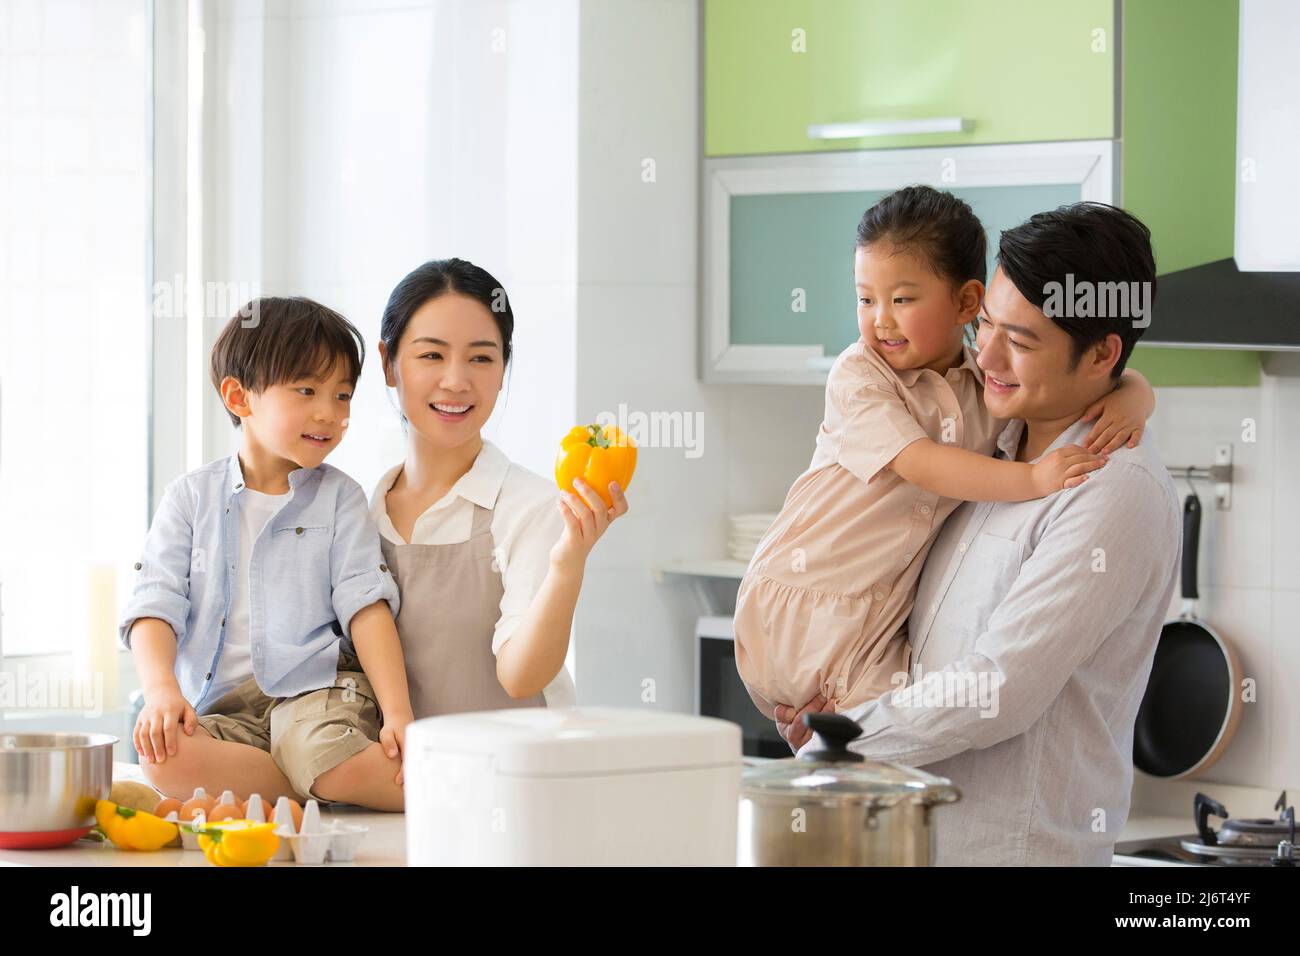 Famiglia parentage. Un giovane genitore gioca con due preschoolers mentre la madre insegna loro una fiaba circa i peperoni dolci. - foto di scorta Foto Stock